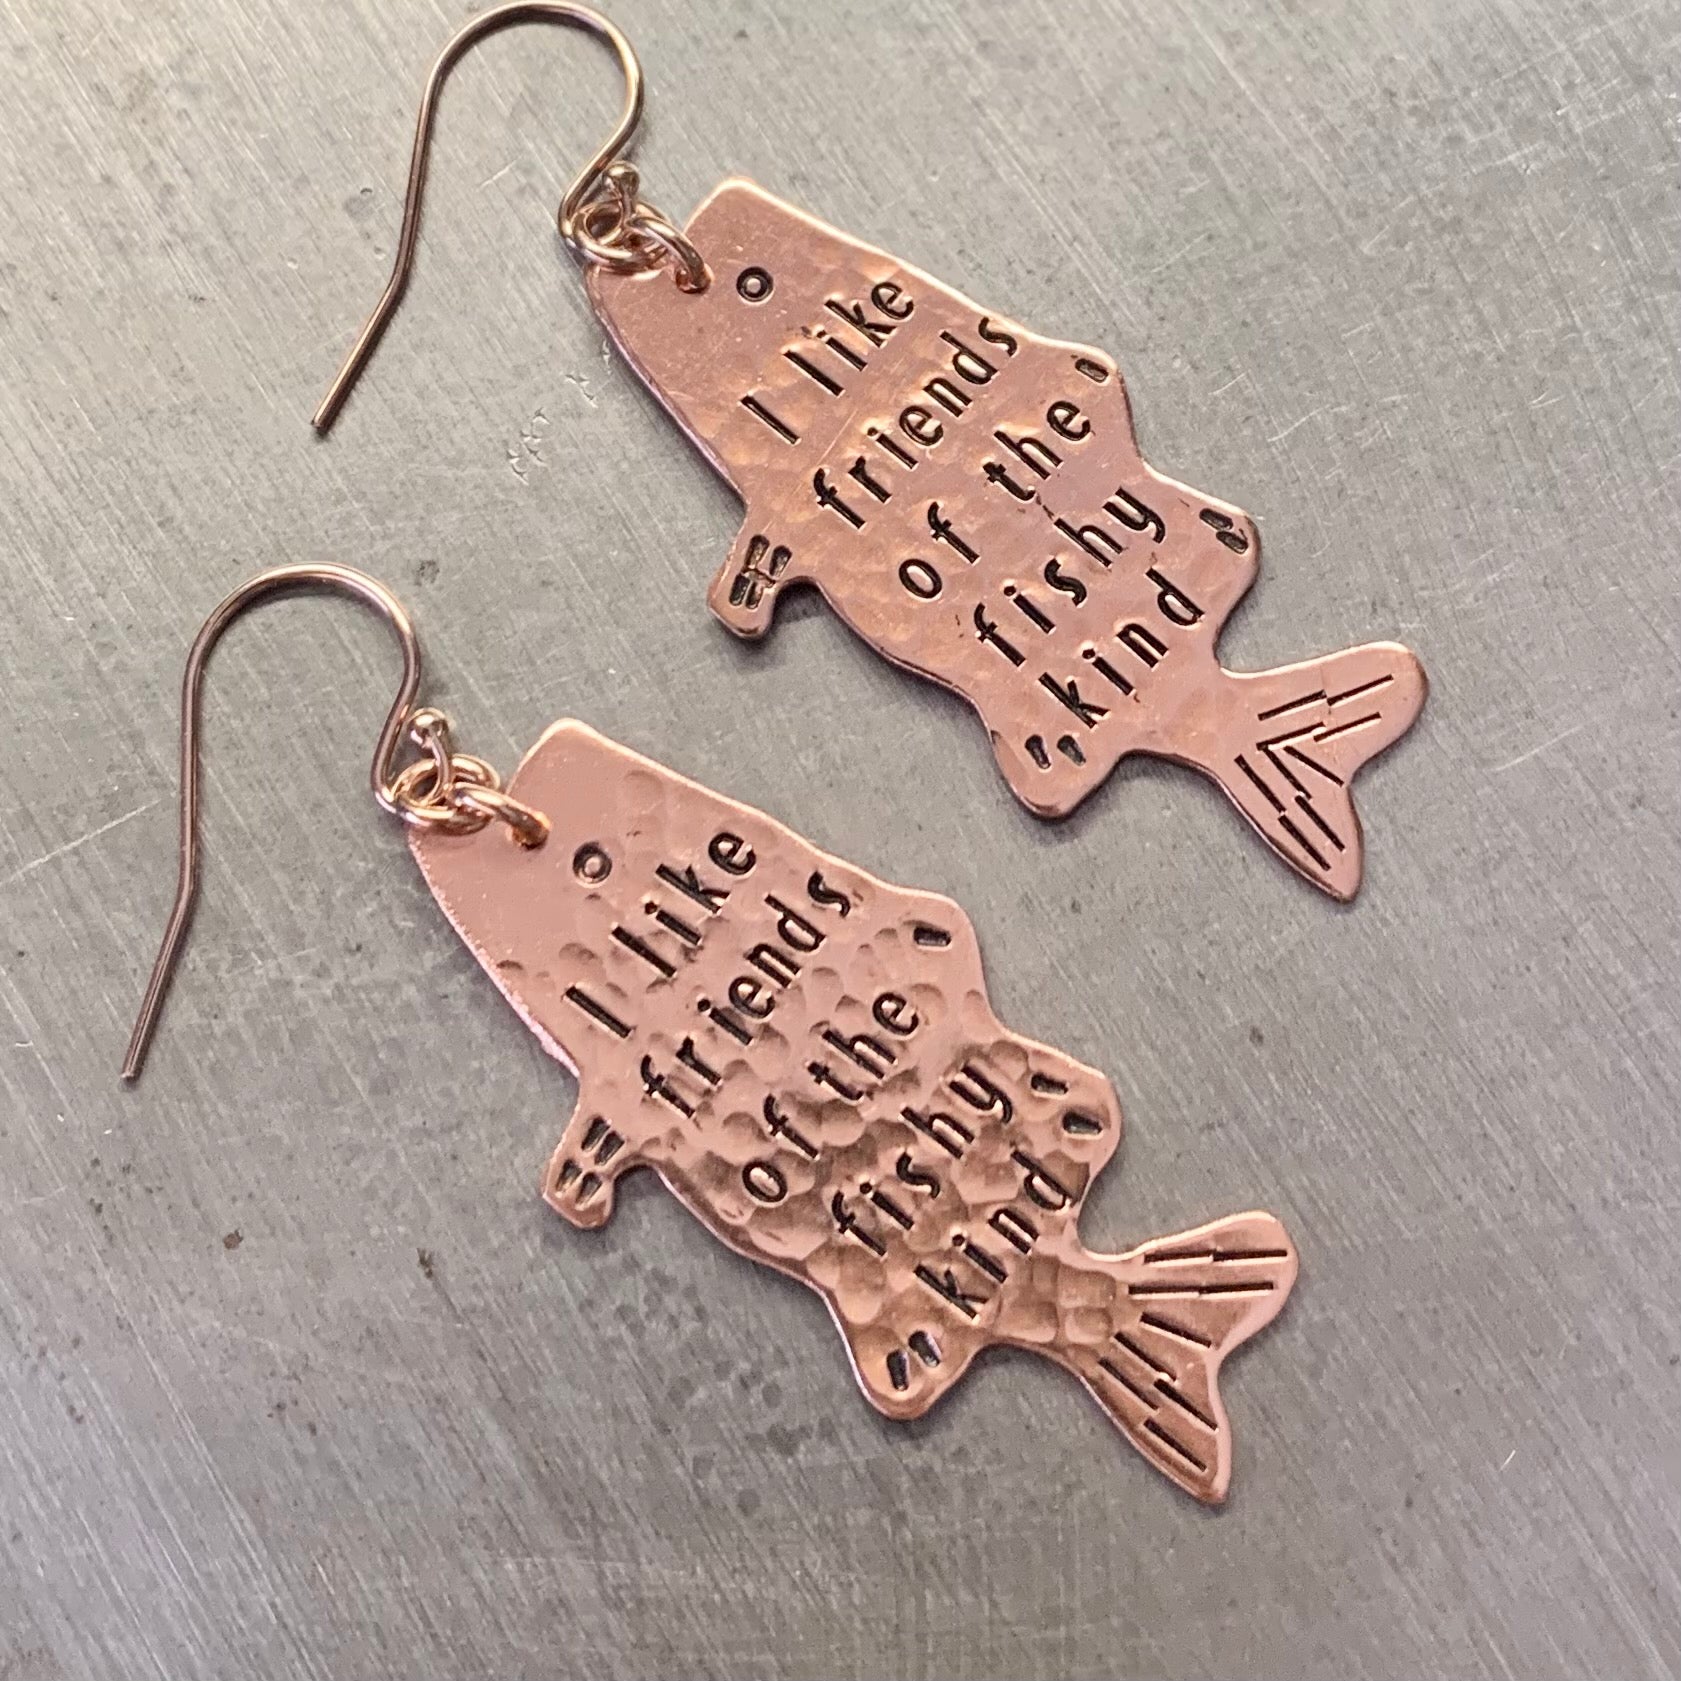 Fishy friends earrings